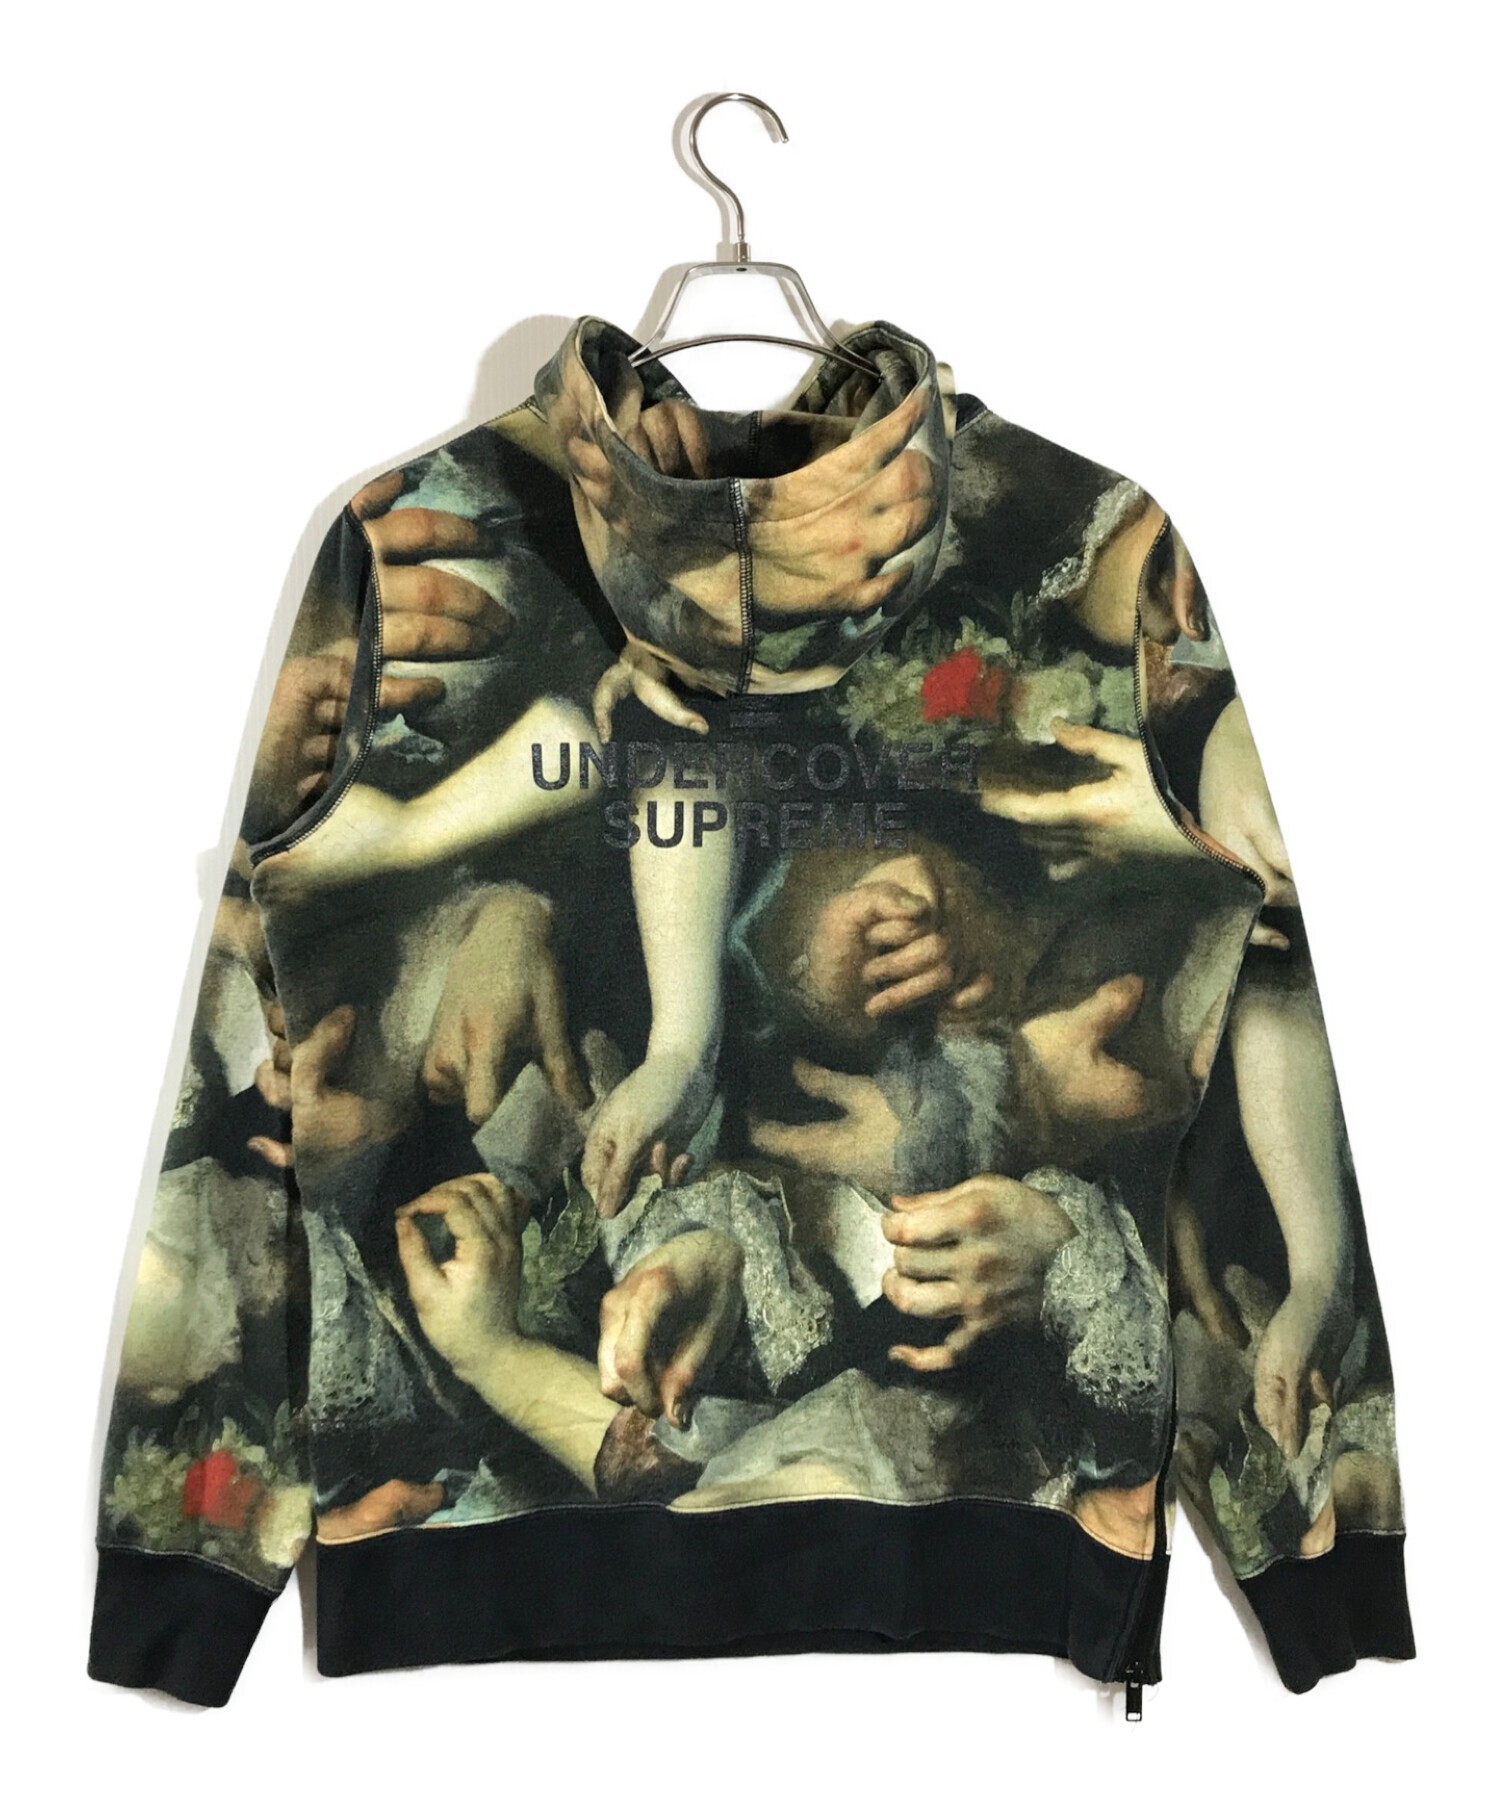 Supreme (シュプリーム) UNDERCOVER (アンダーカバー) Hooded Sweatshirt　フーデッドセーターシャツ  ブラック×グリーン サイズ:M